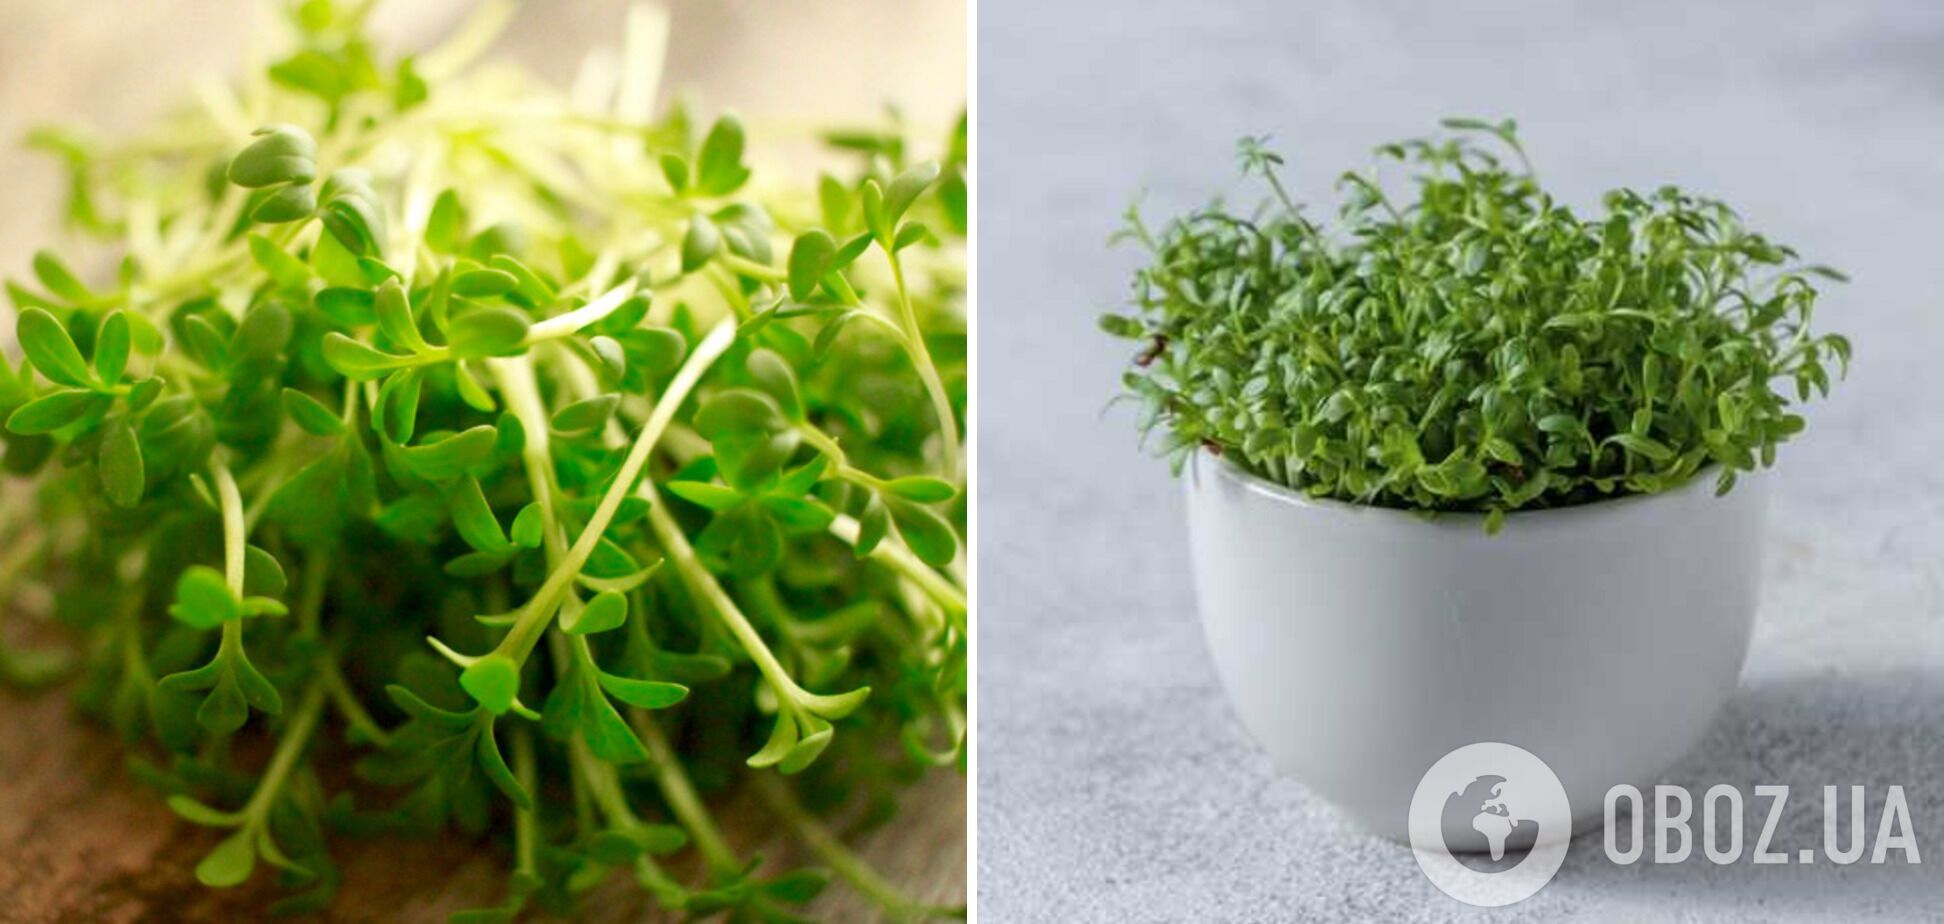 Кресс-салат – микрозелень, которую можно вырастить дома